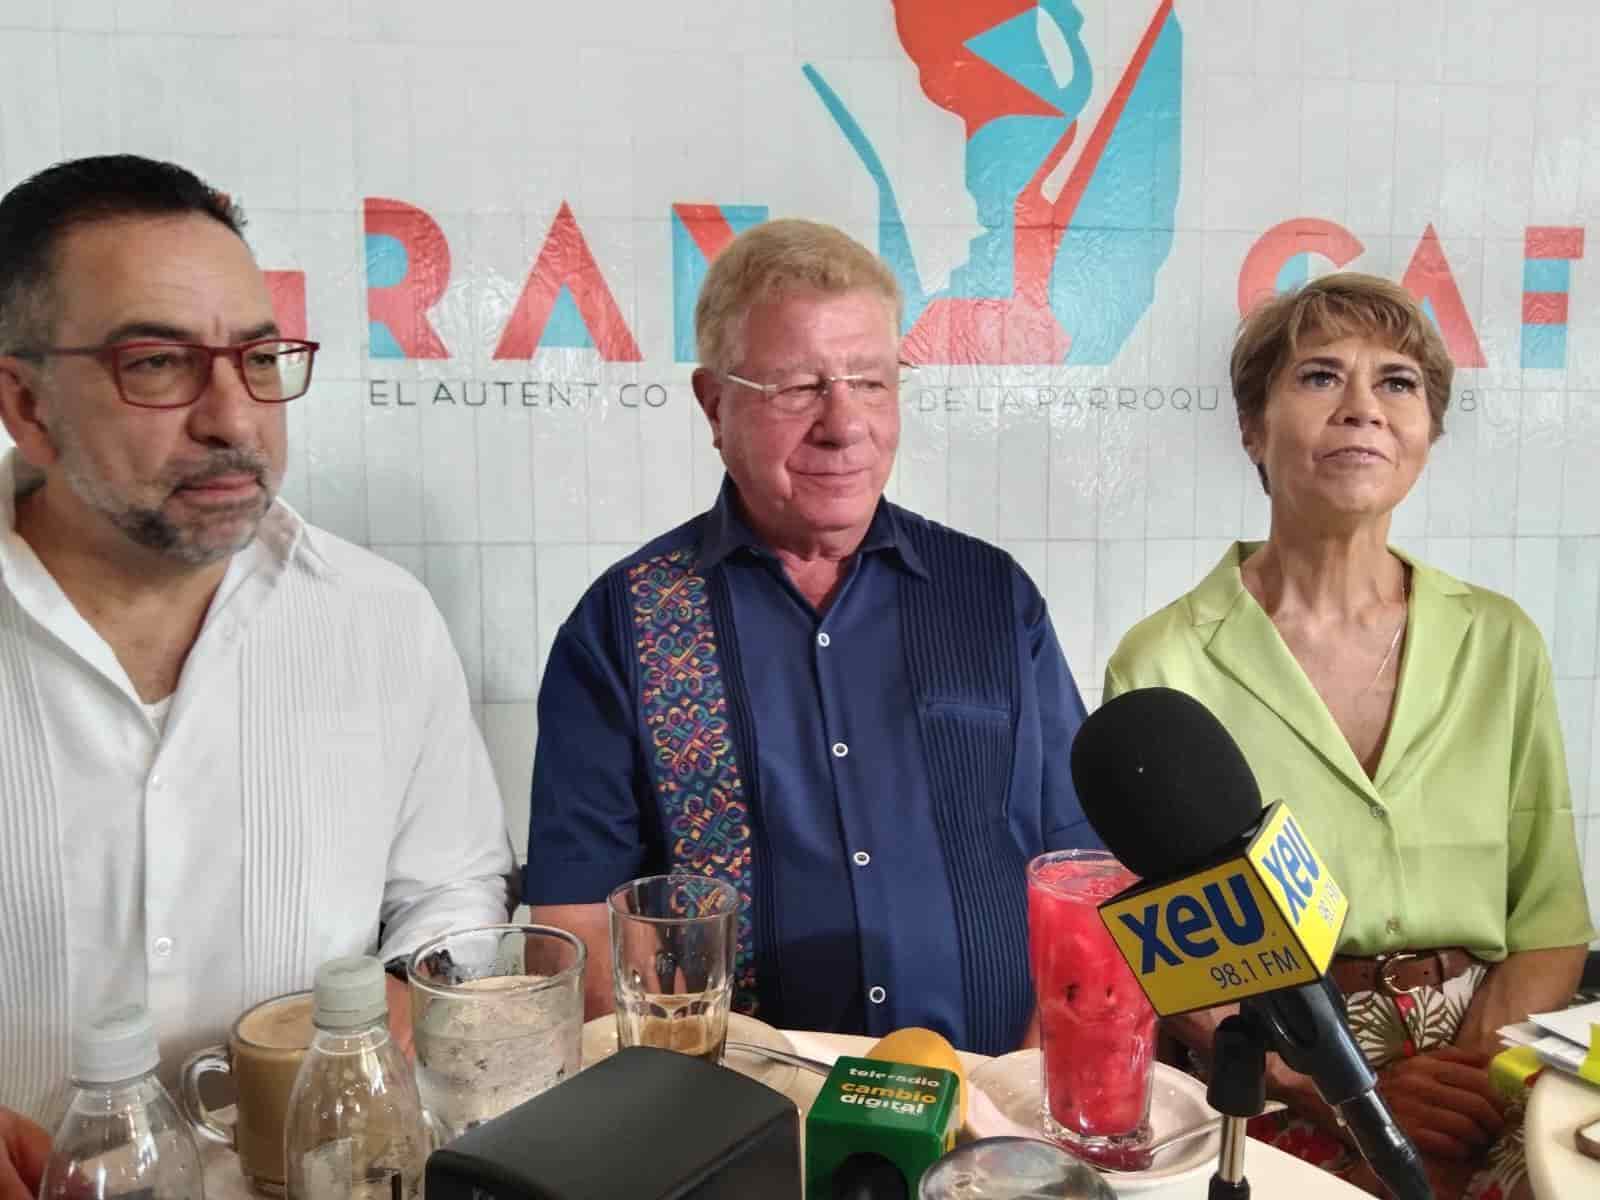 Oposición, con gran probabilidad de ganar la gubernatura en Veracruz: Alazraki